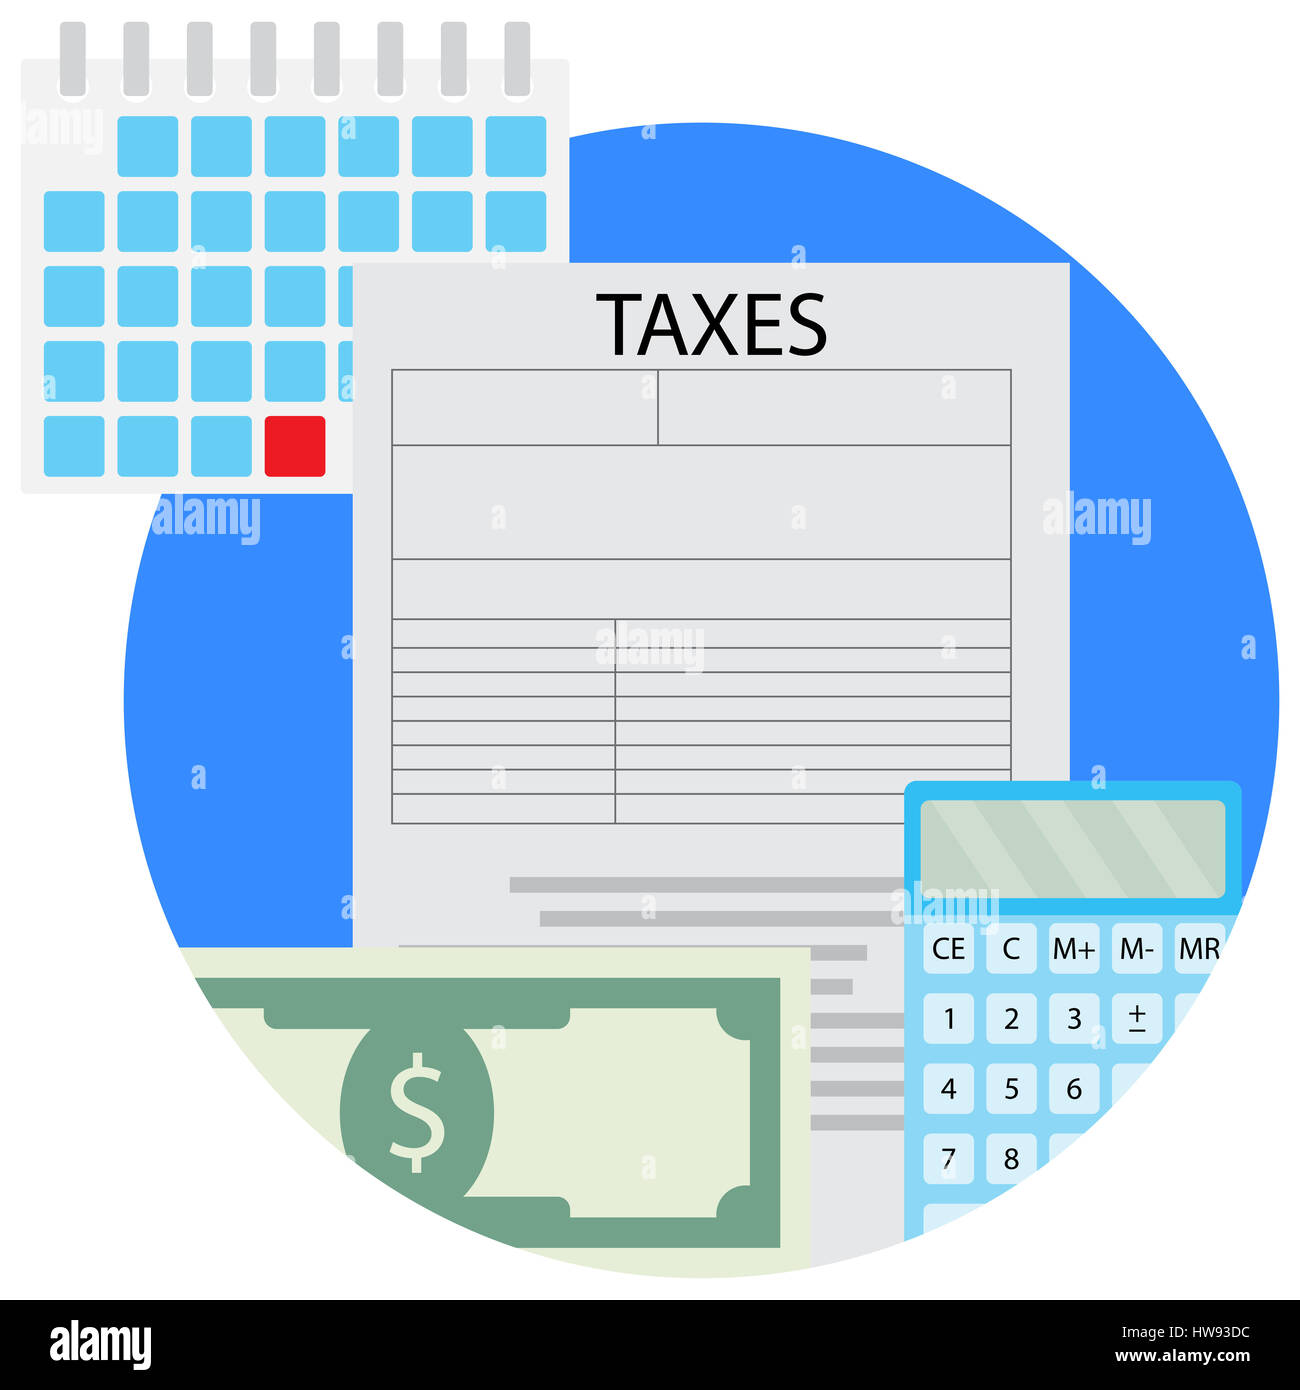 Taxacation Vektor Icon. Zählung von Banknoten, Besteuerung Berechnung Abbildung Stockfoto